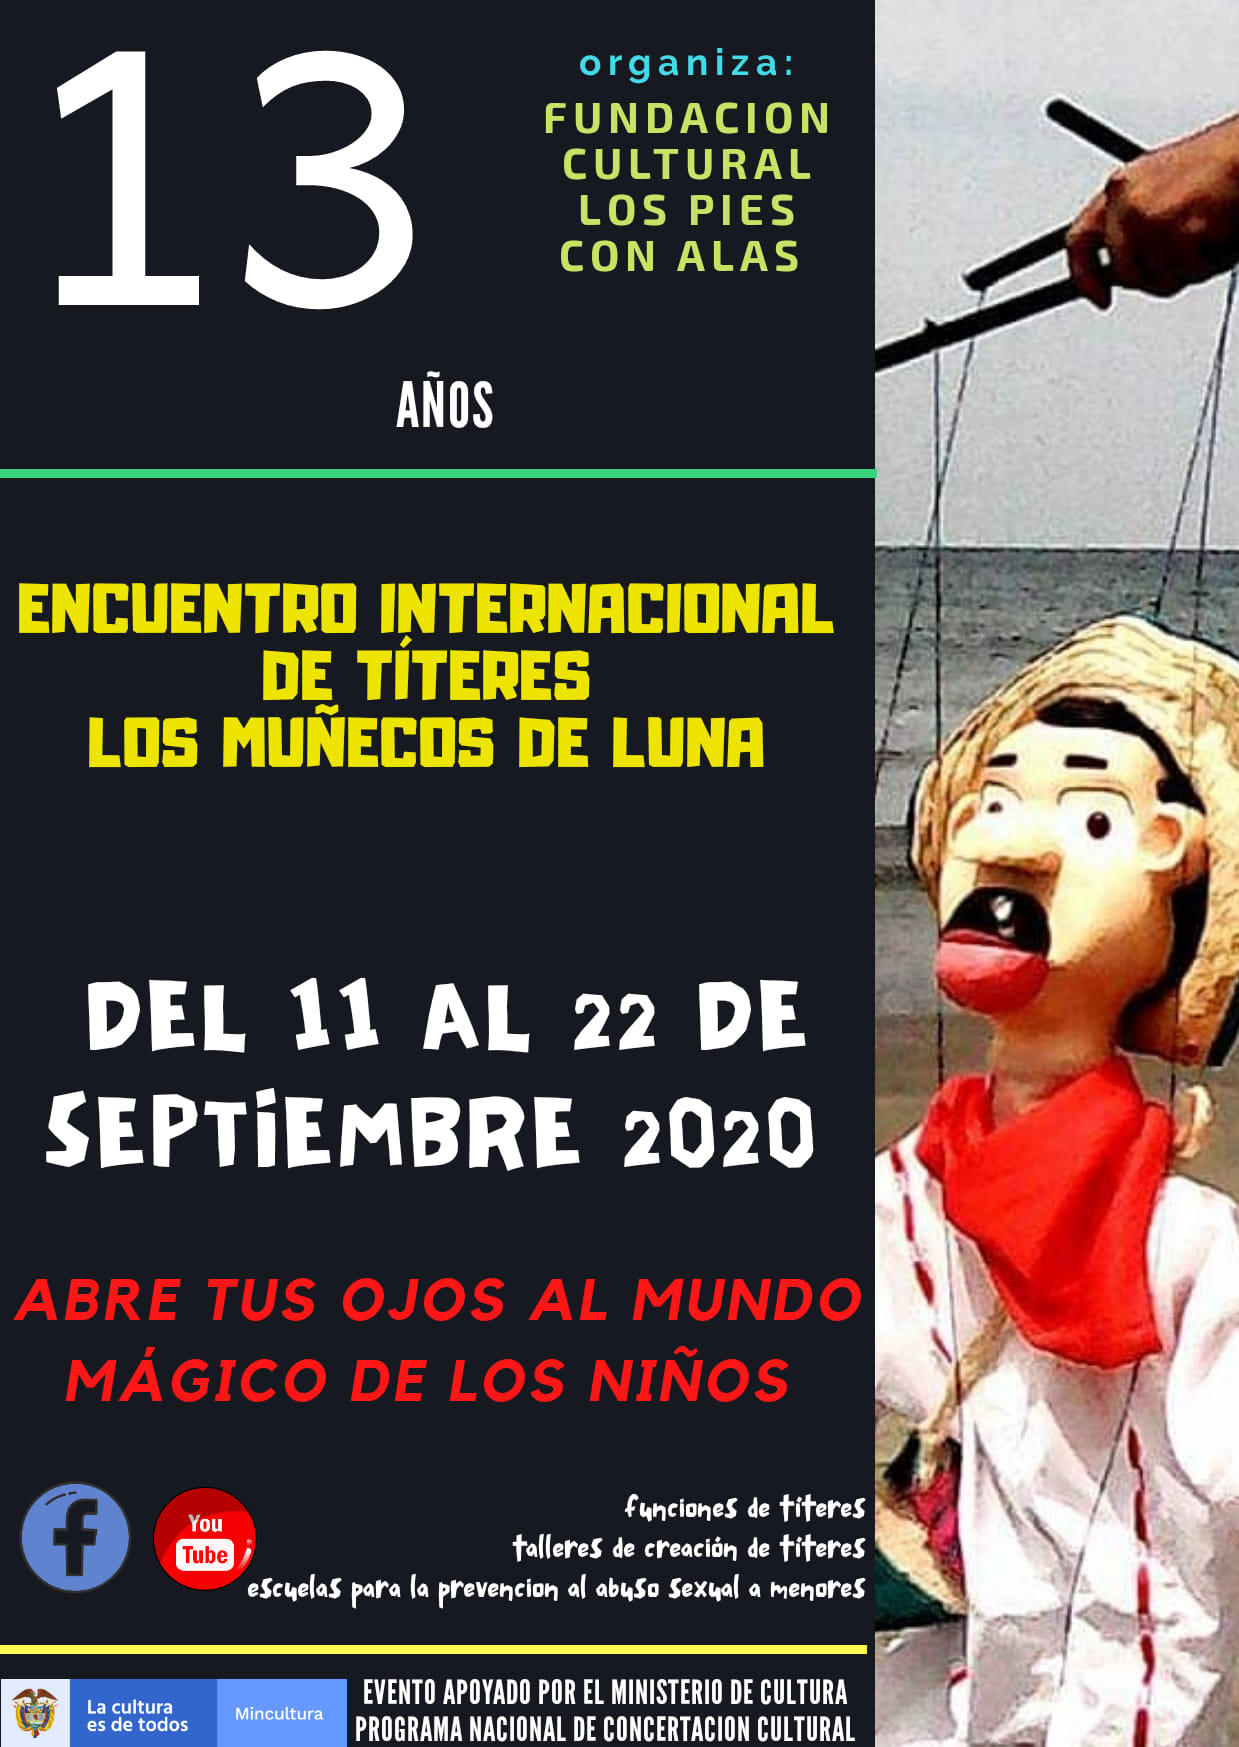 17 Encuentro Iberoamericano de Teatro y Títeres los muñecos de luna          es los Muñecos de     loso y Títeres s Mu    